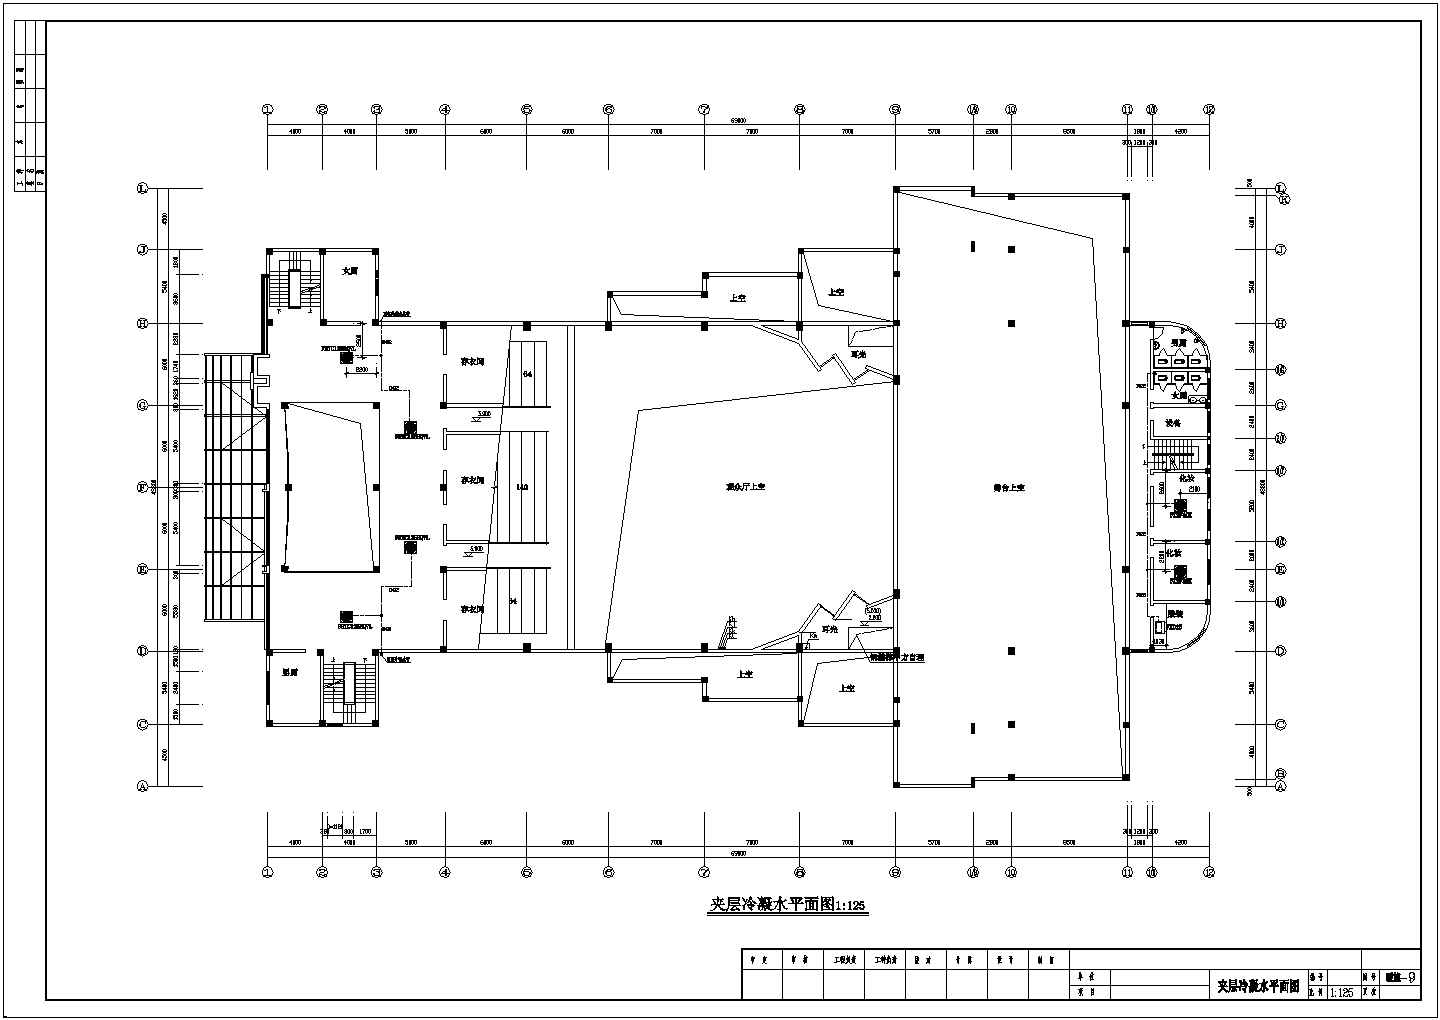 小型剧场剧院VRV空调通风排烟系统设计施工图